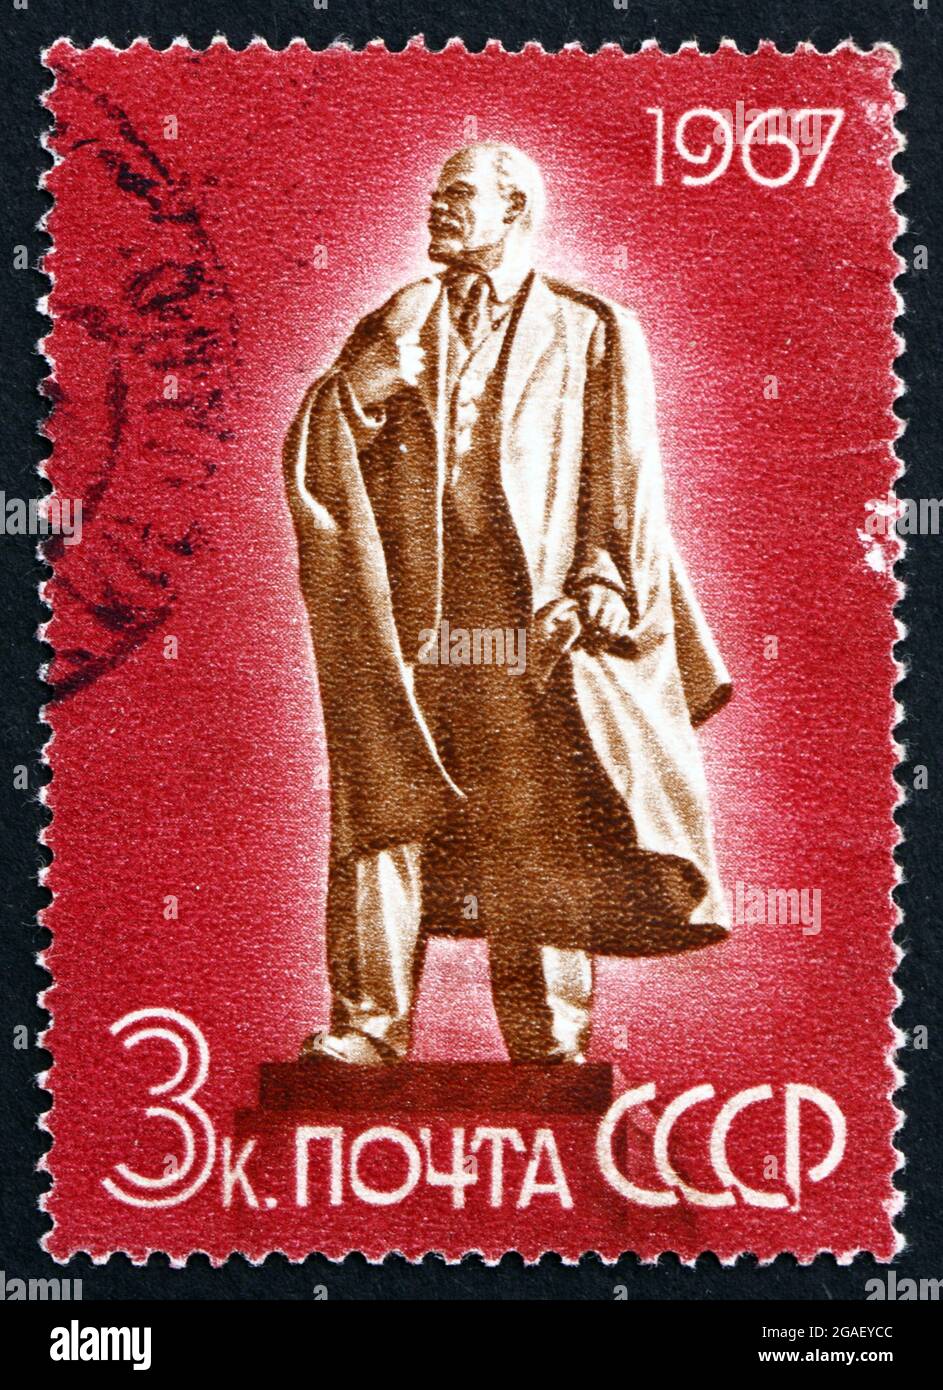 RUSSLAND - UM 1967: Eine in Russland gedruckte Briefmarke zeigt Wladimir Iljitsch Lenin, von M. Manizer, Denkmal in Uljanowsk, um 1967 Stockfoto